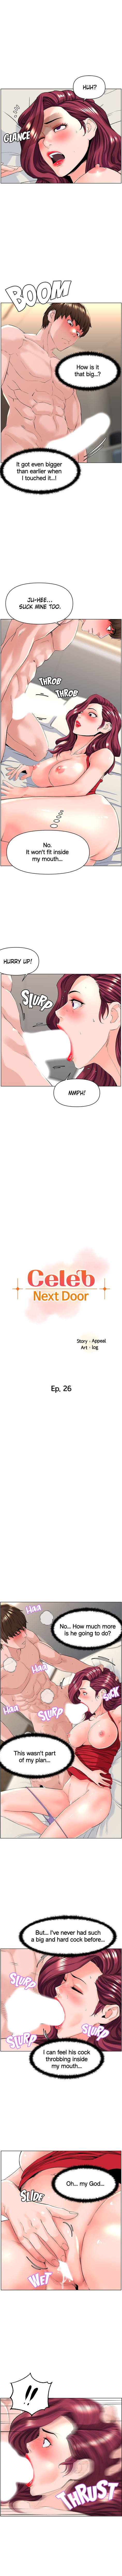 celeb-next-door-chap-26-0